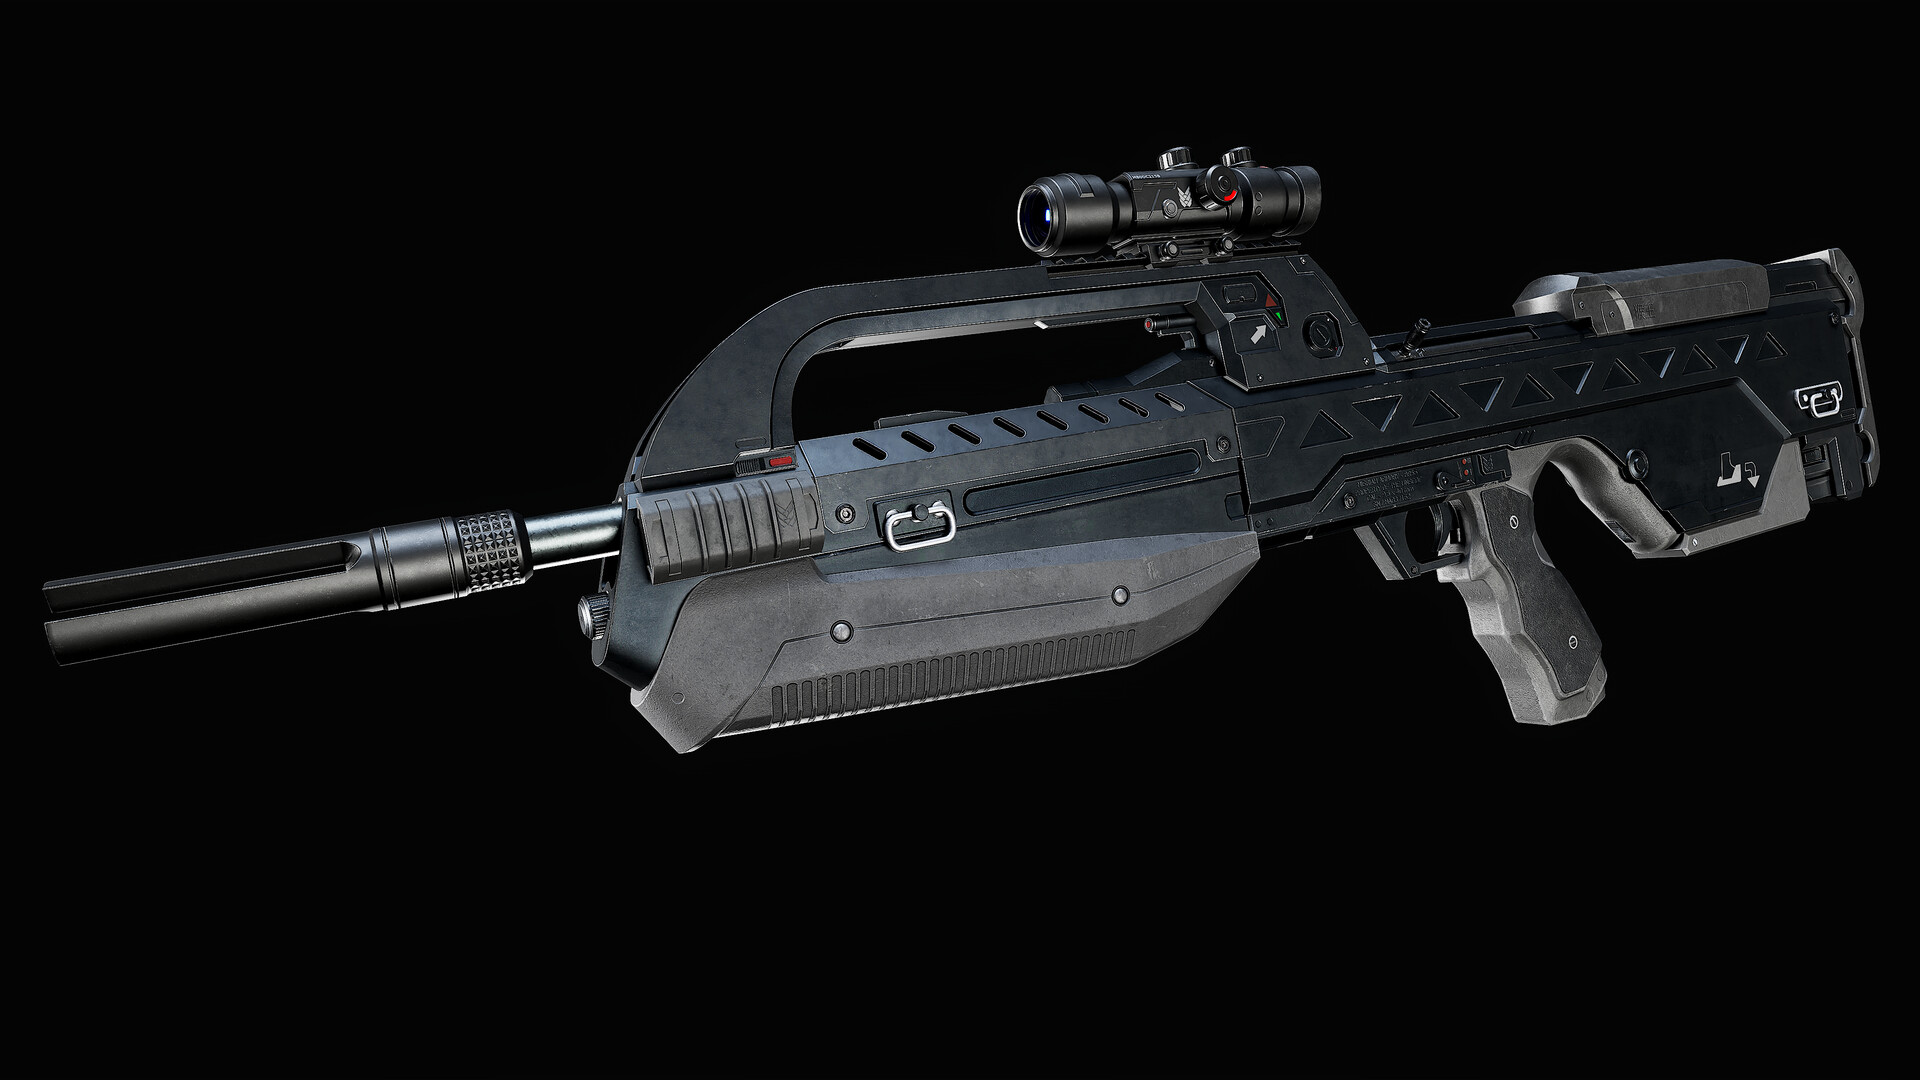 35 Foam BR55 Battle Rifle Chief Replica Sci-fi Video Game